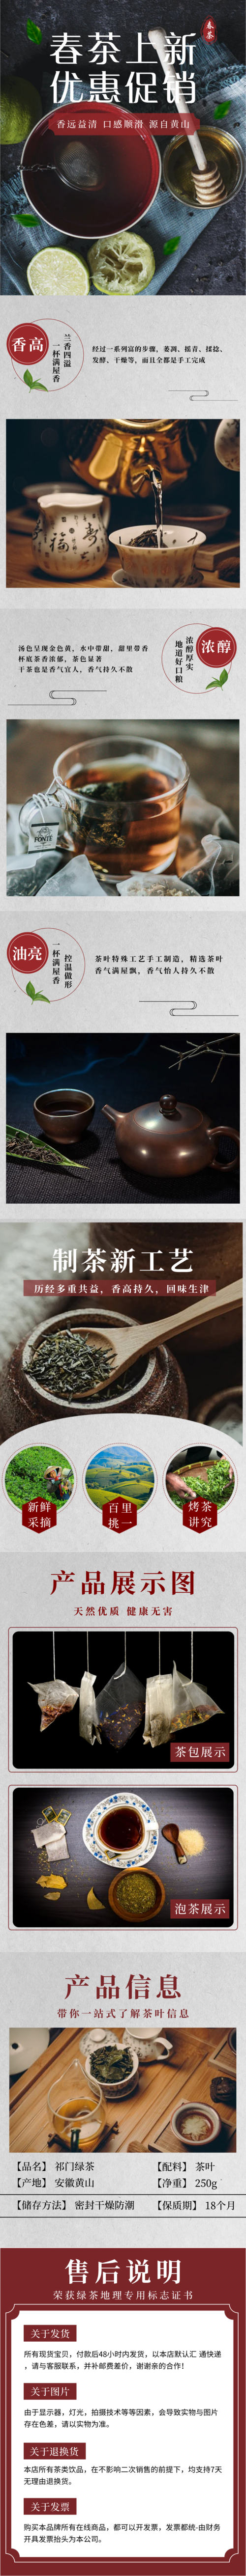 中国风春茶促销活动宝贝详情主页